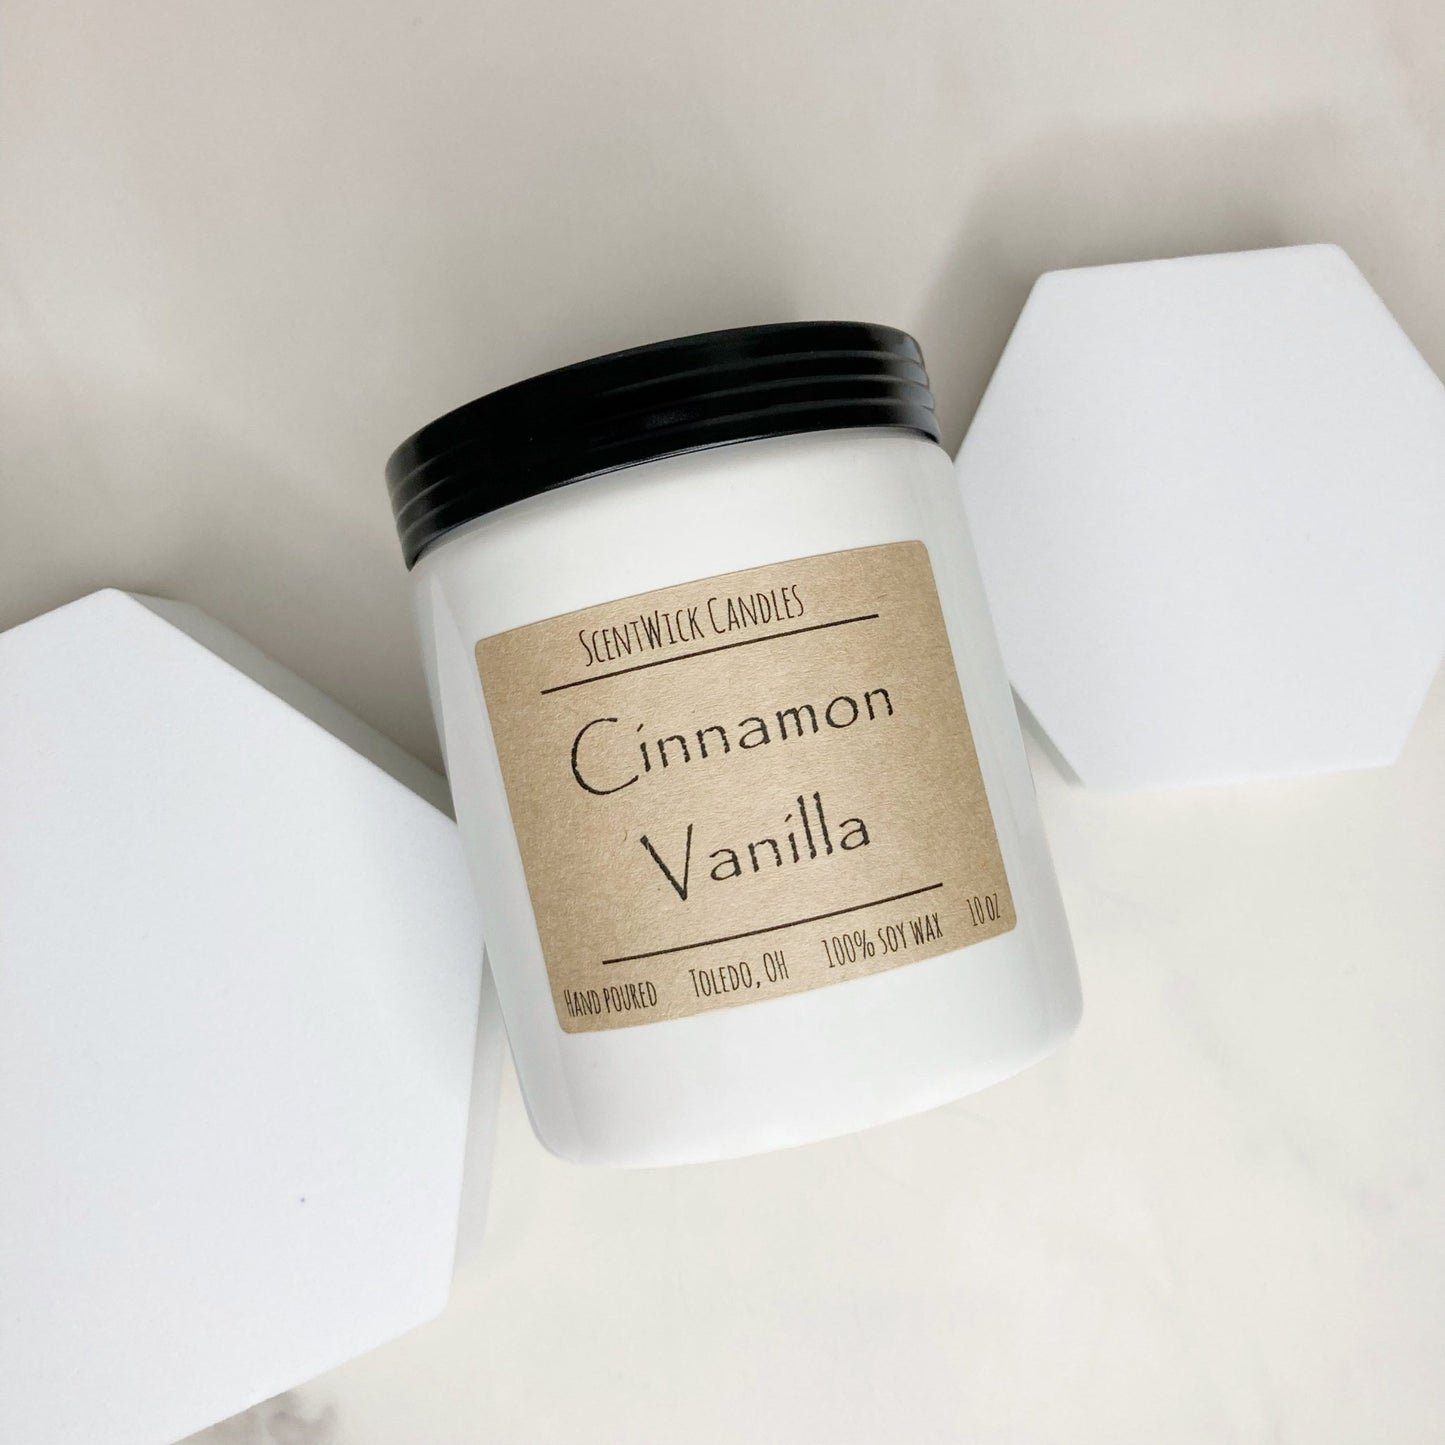 Cinnamon Vanilla | The Farmhouse Collection - ScentWick Candles